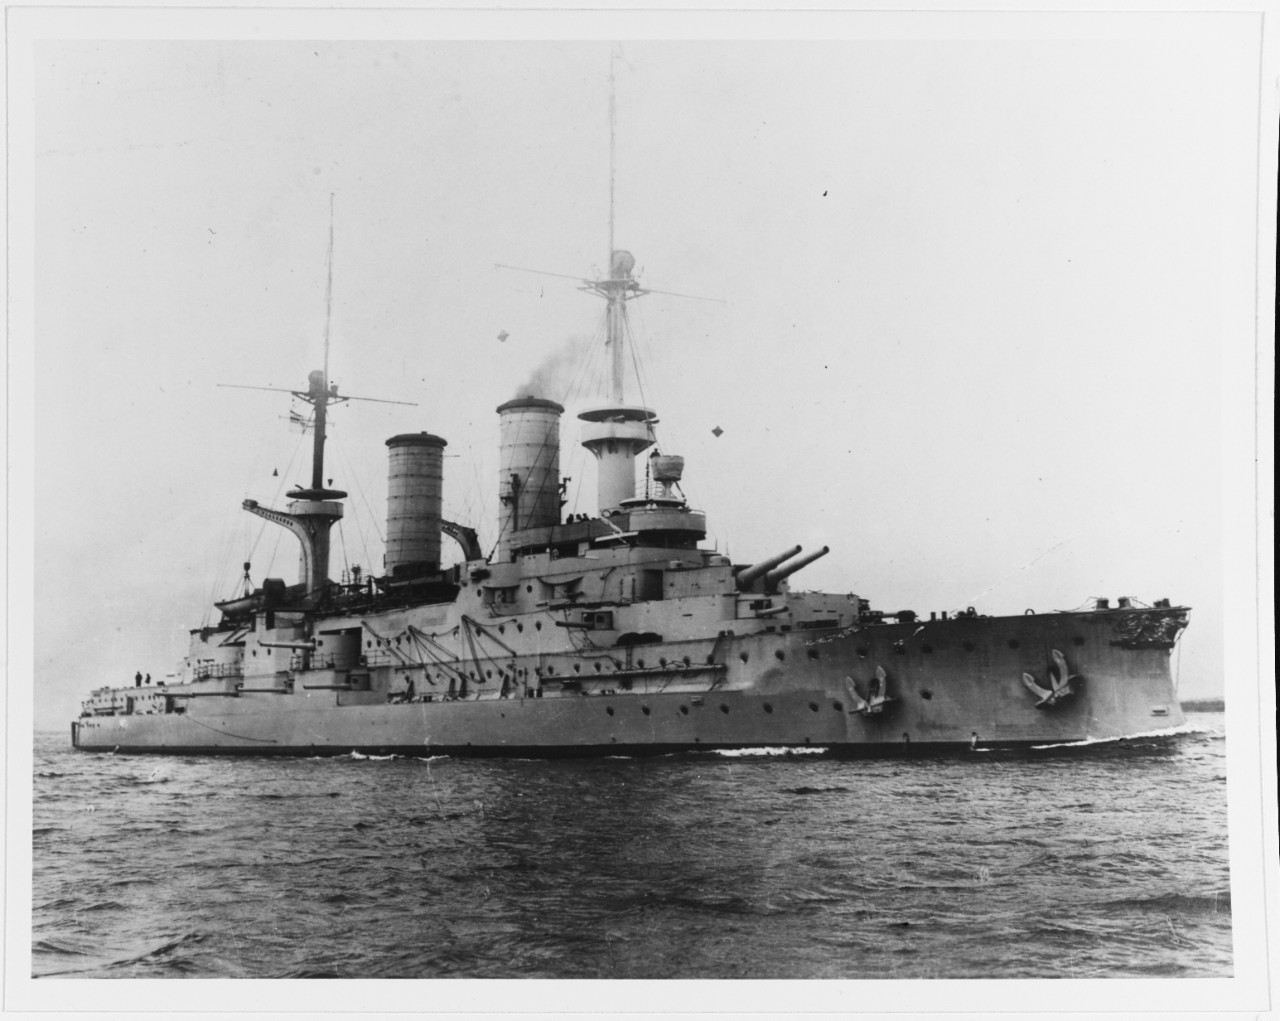 SCHWABEN (German battleship, 1901-1921)